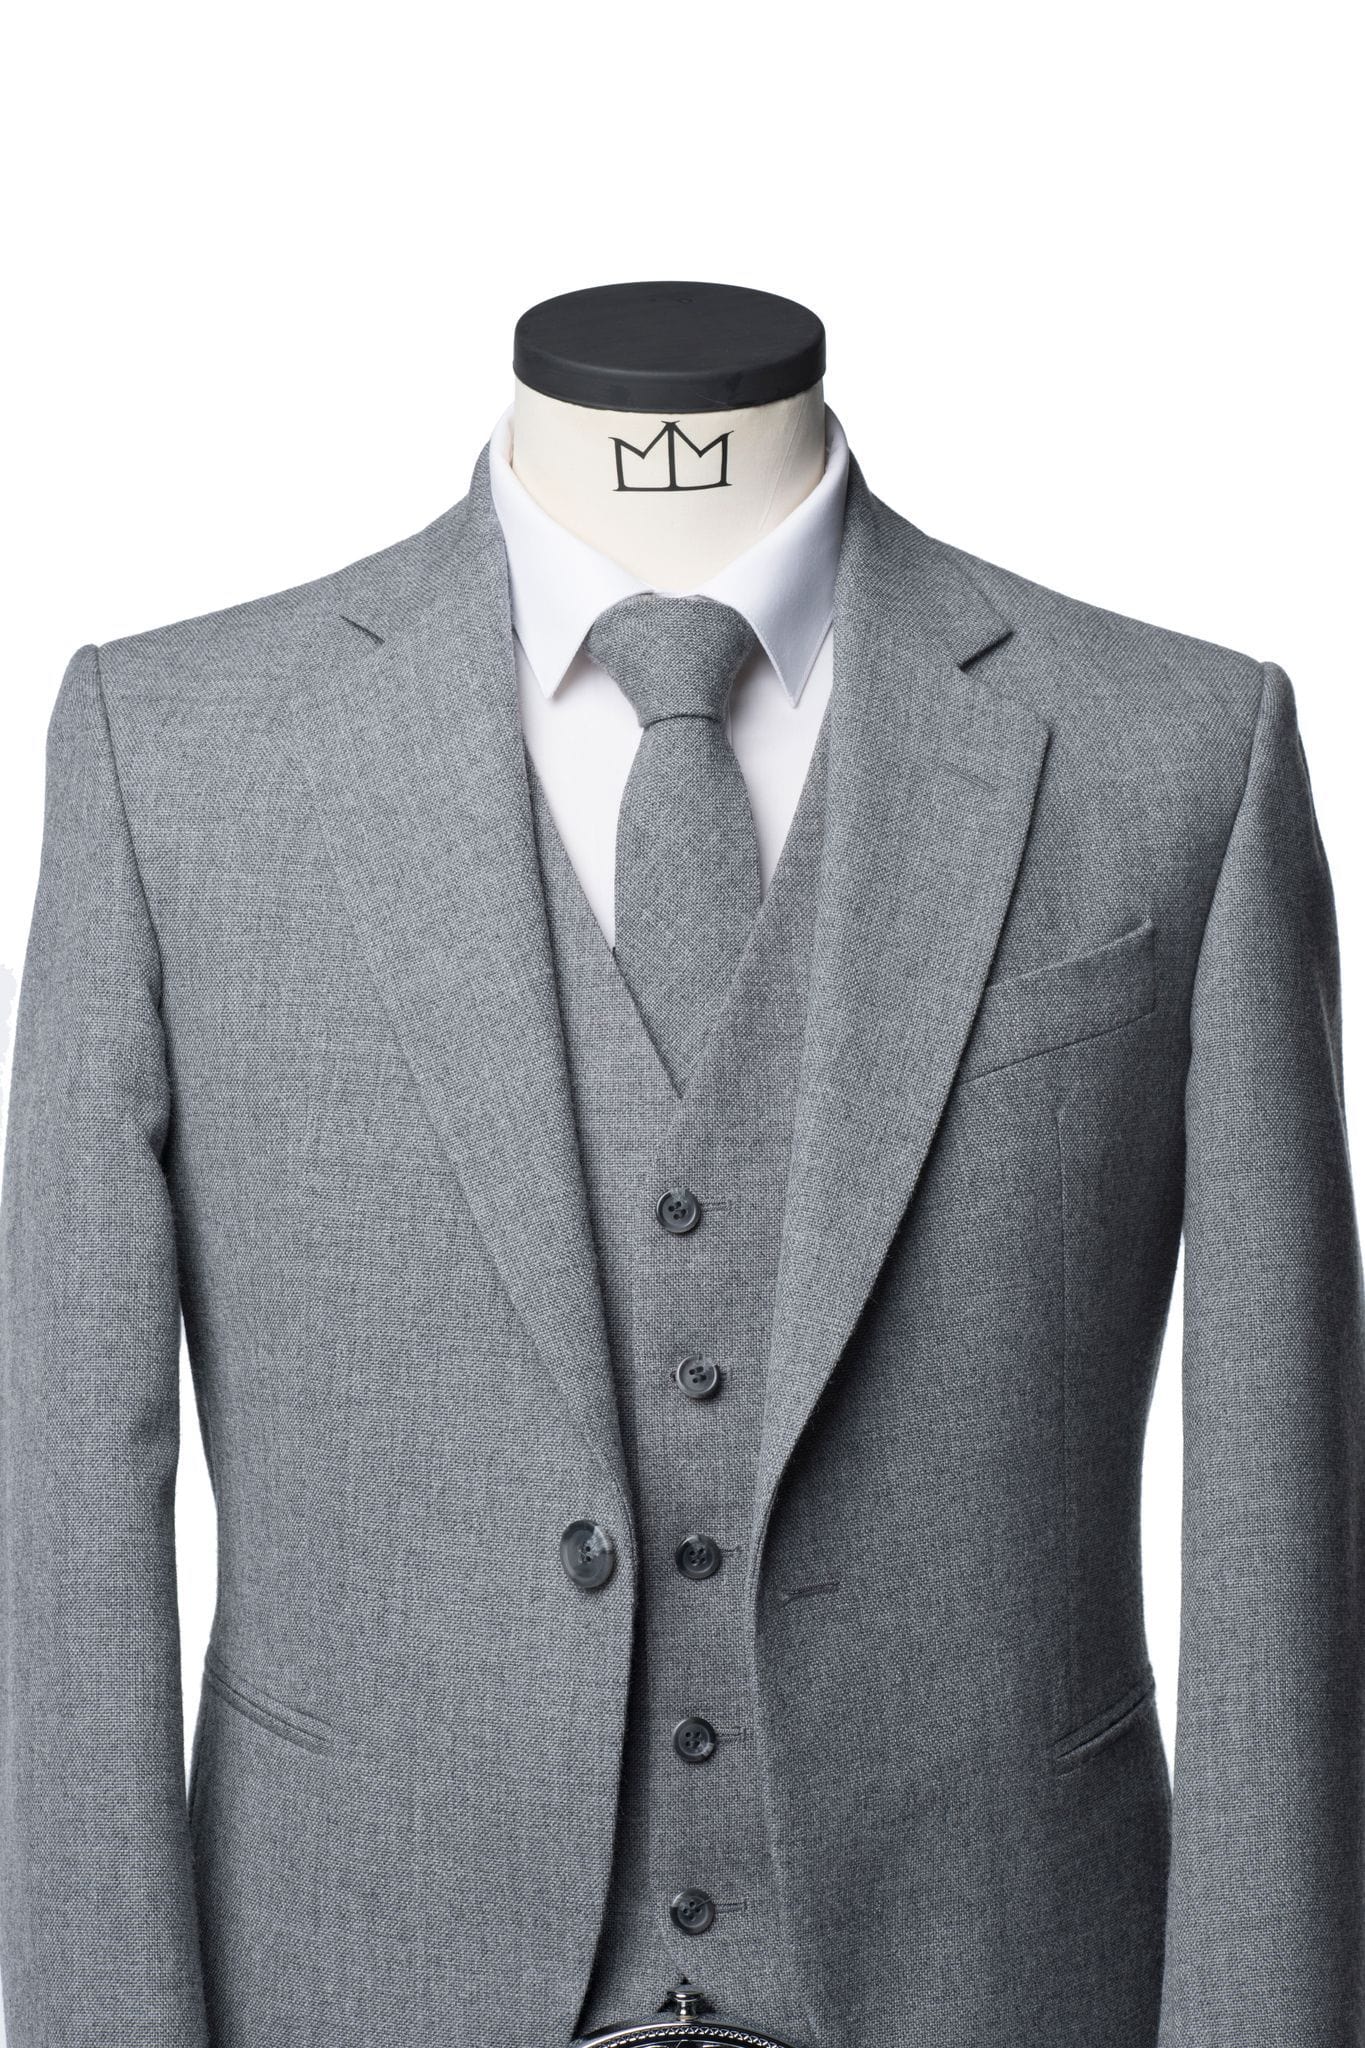 Lomond Grey Tweed Kilt Jacket and Waistcoat - MacGregor and MacDuff